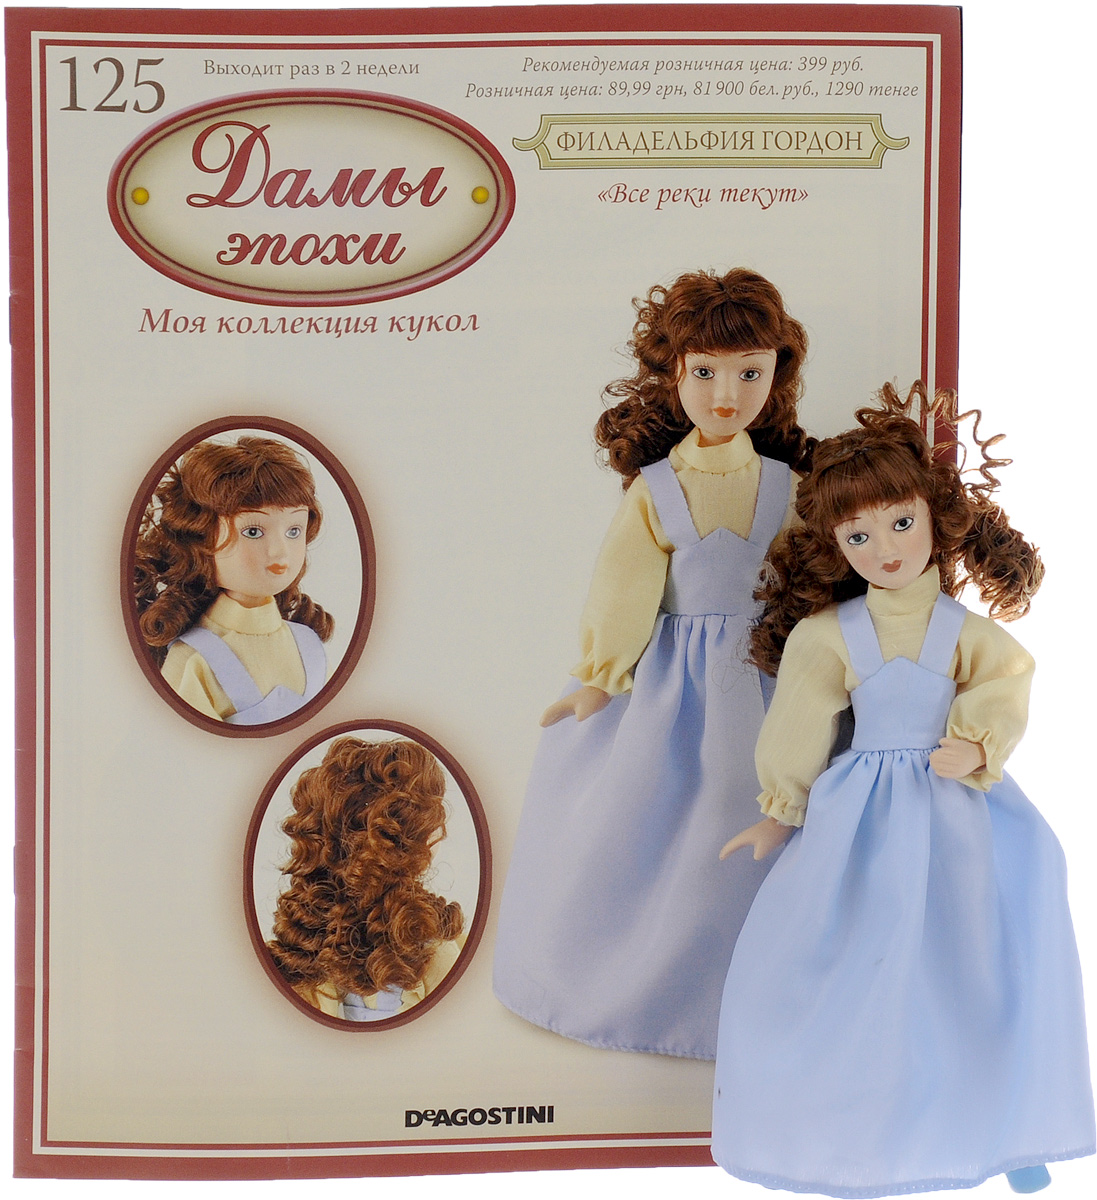 Купить куклы эпох. Фарфоровые куклы с журналом дамы эпохи. Куклы ДЕАГОСТИНИ дамы эпохи коллекция. Кукла Джейн Остин дамы эпохи. Куклы дамы эпохи ДЕАГОСТИНИ вся коллекция.